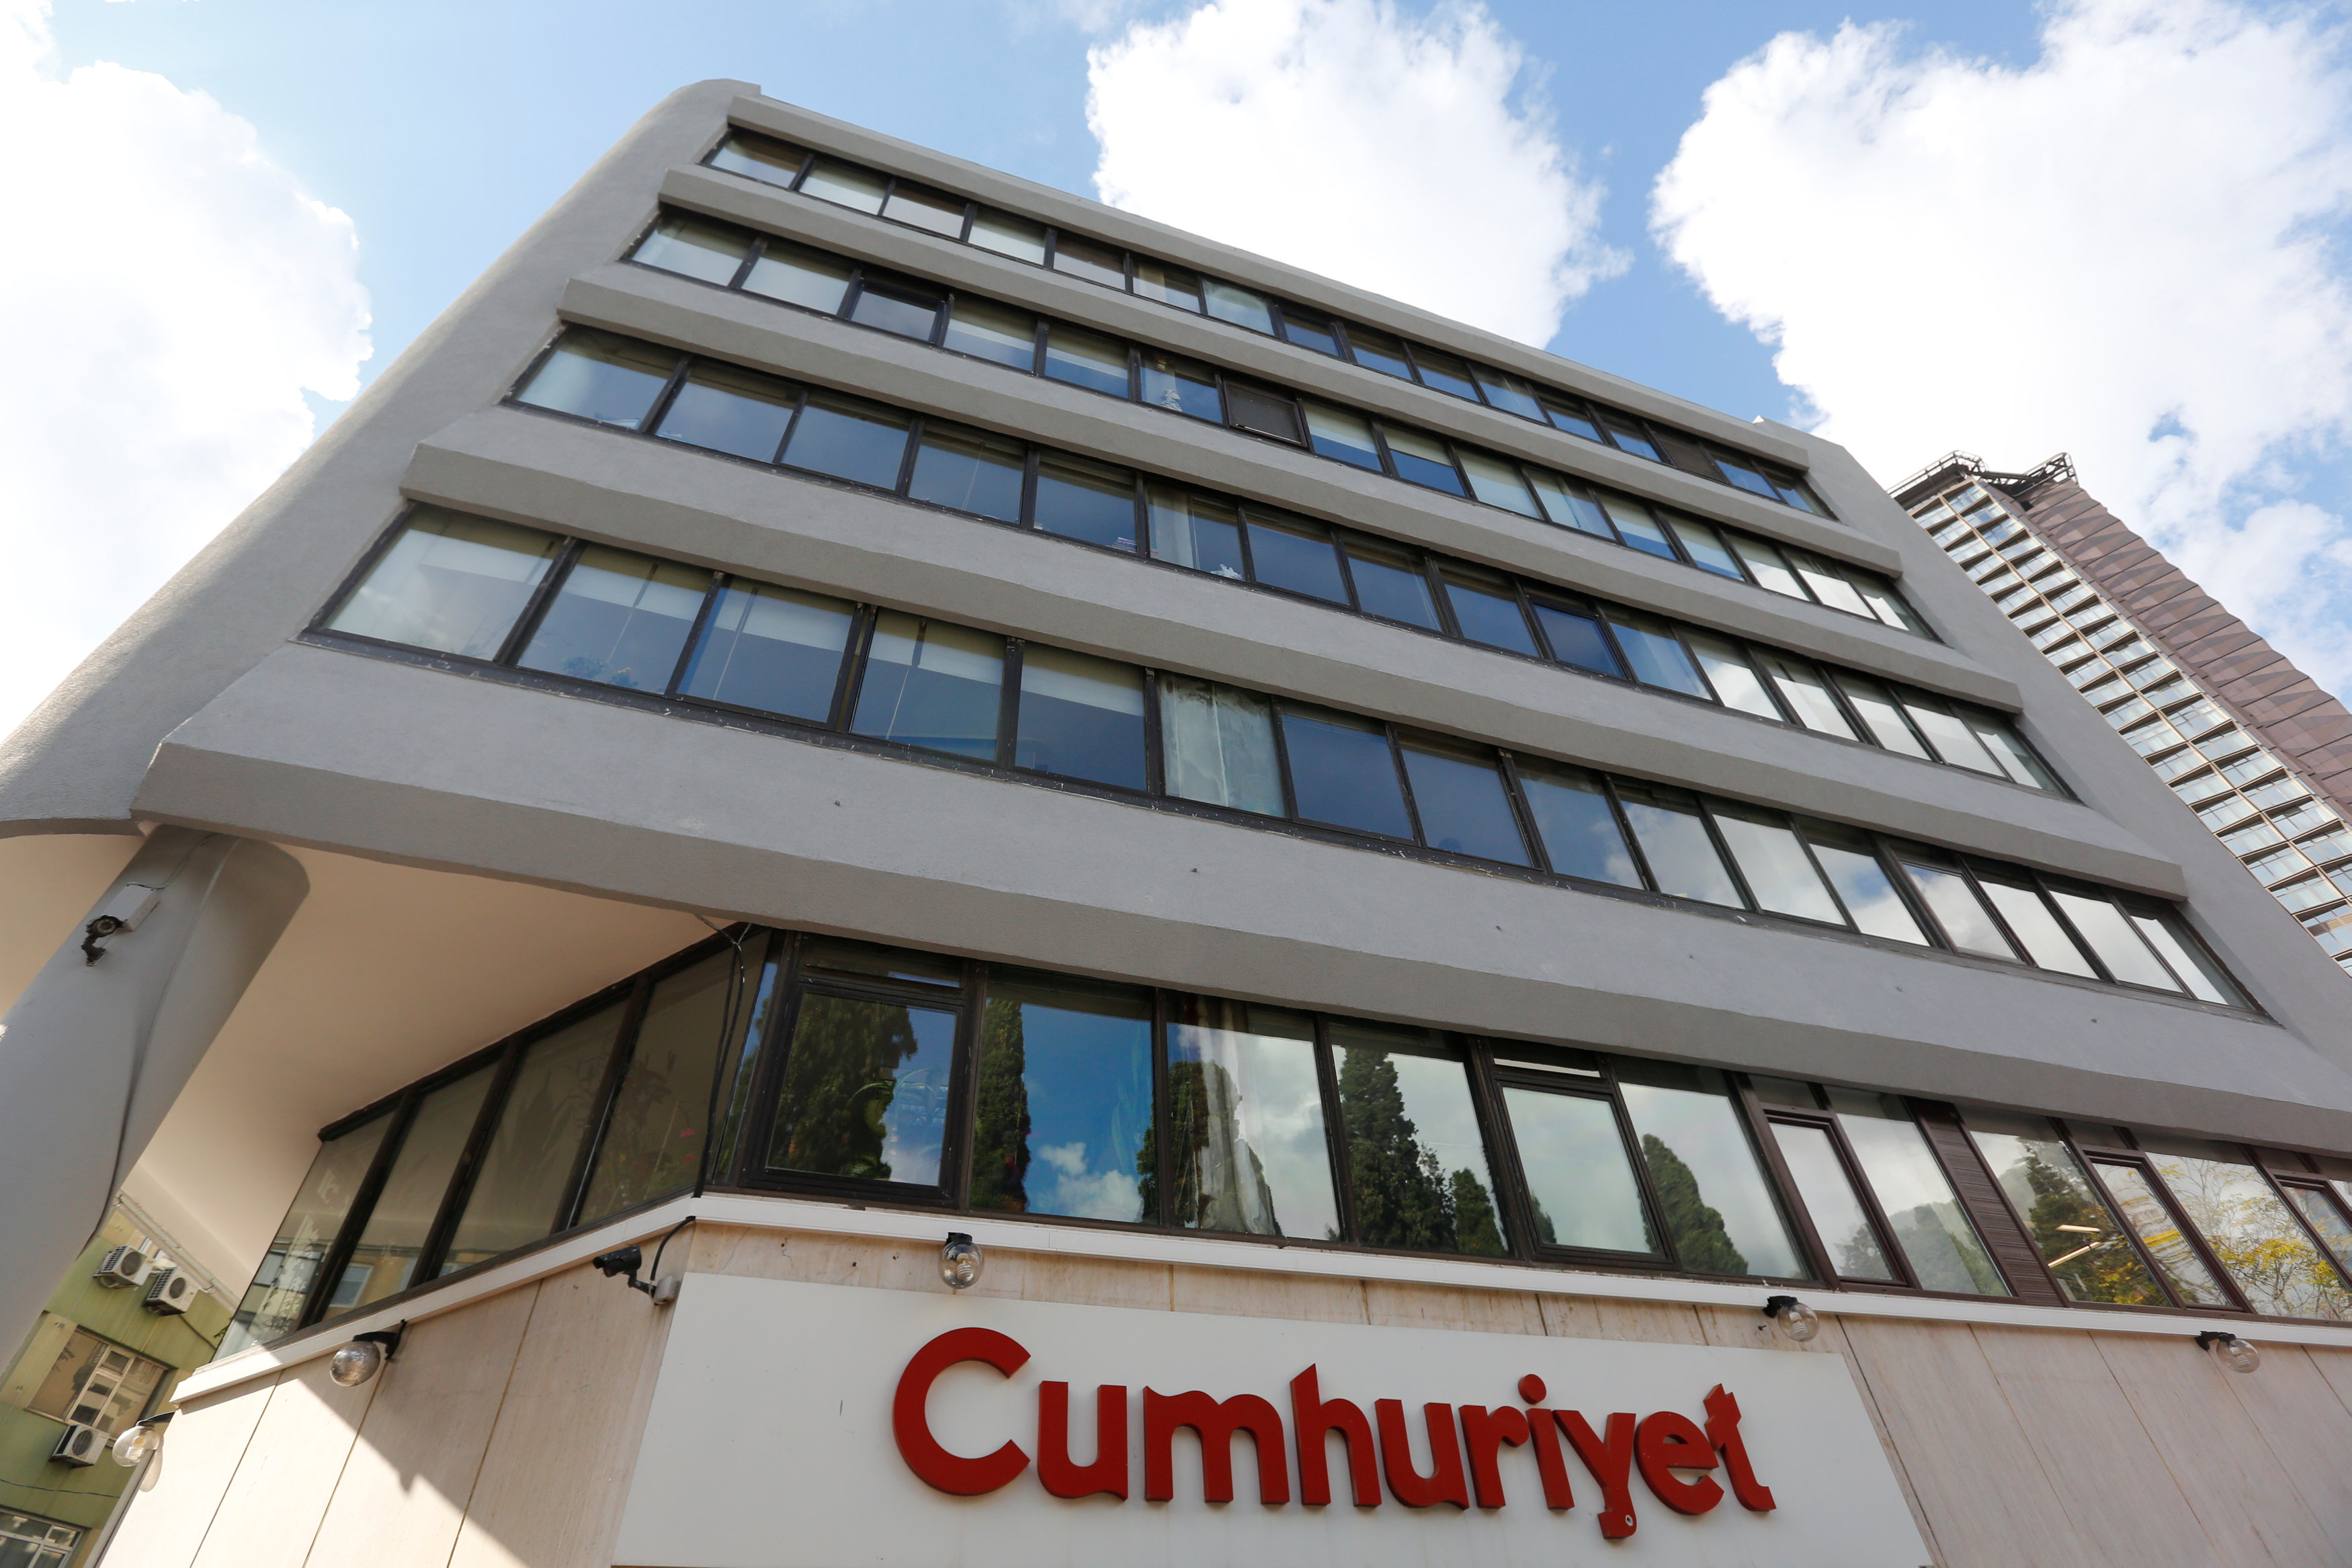 Detienen al director del diario turco de oposición Cumhuriyet